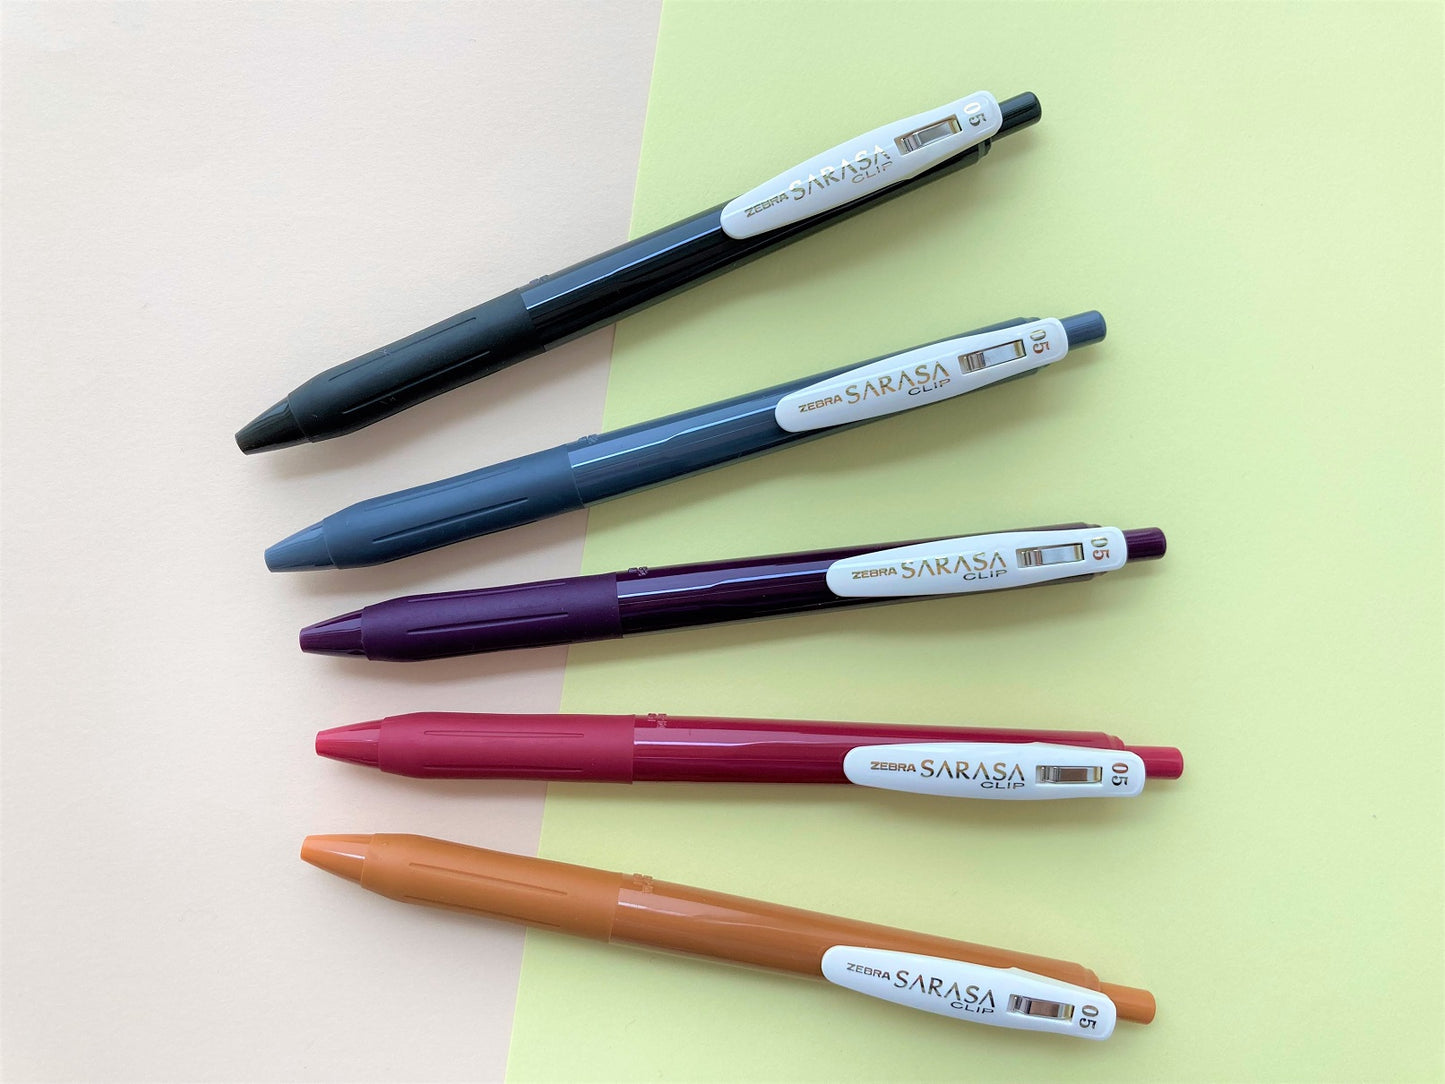 Zebra Sarasa Clip Pen Vintage color 2 - 5 set